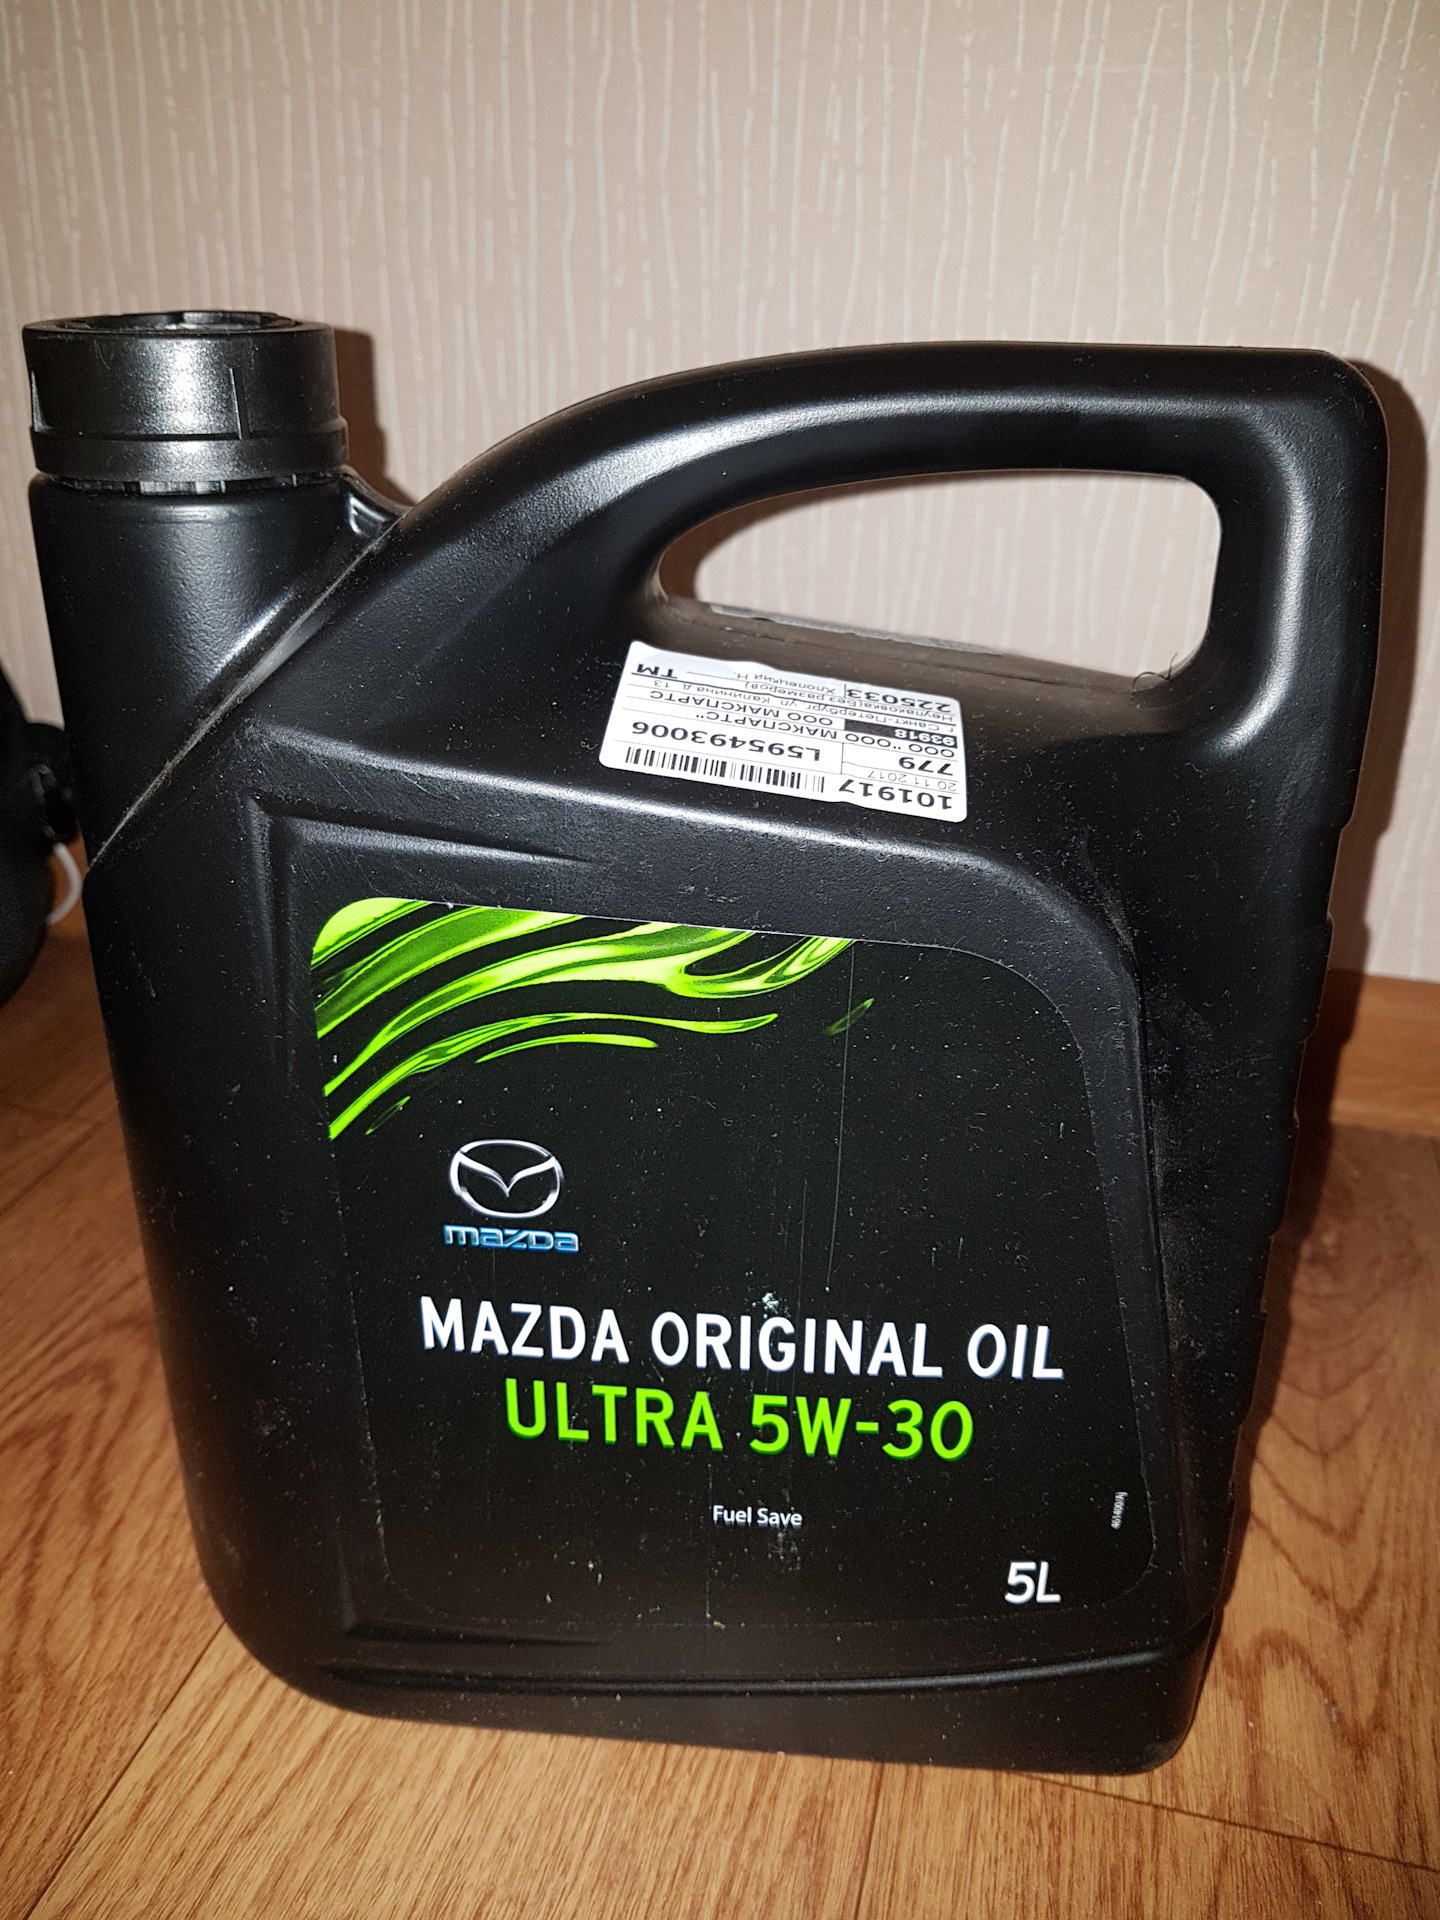 Артикул масла мазда. Mazda 0530-05-TFE. Оригинальное моторное масло на Мазда 6. Масло Mazda 530 артикул. Оригинальное масло Мазда 6 артикул.